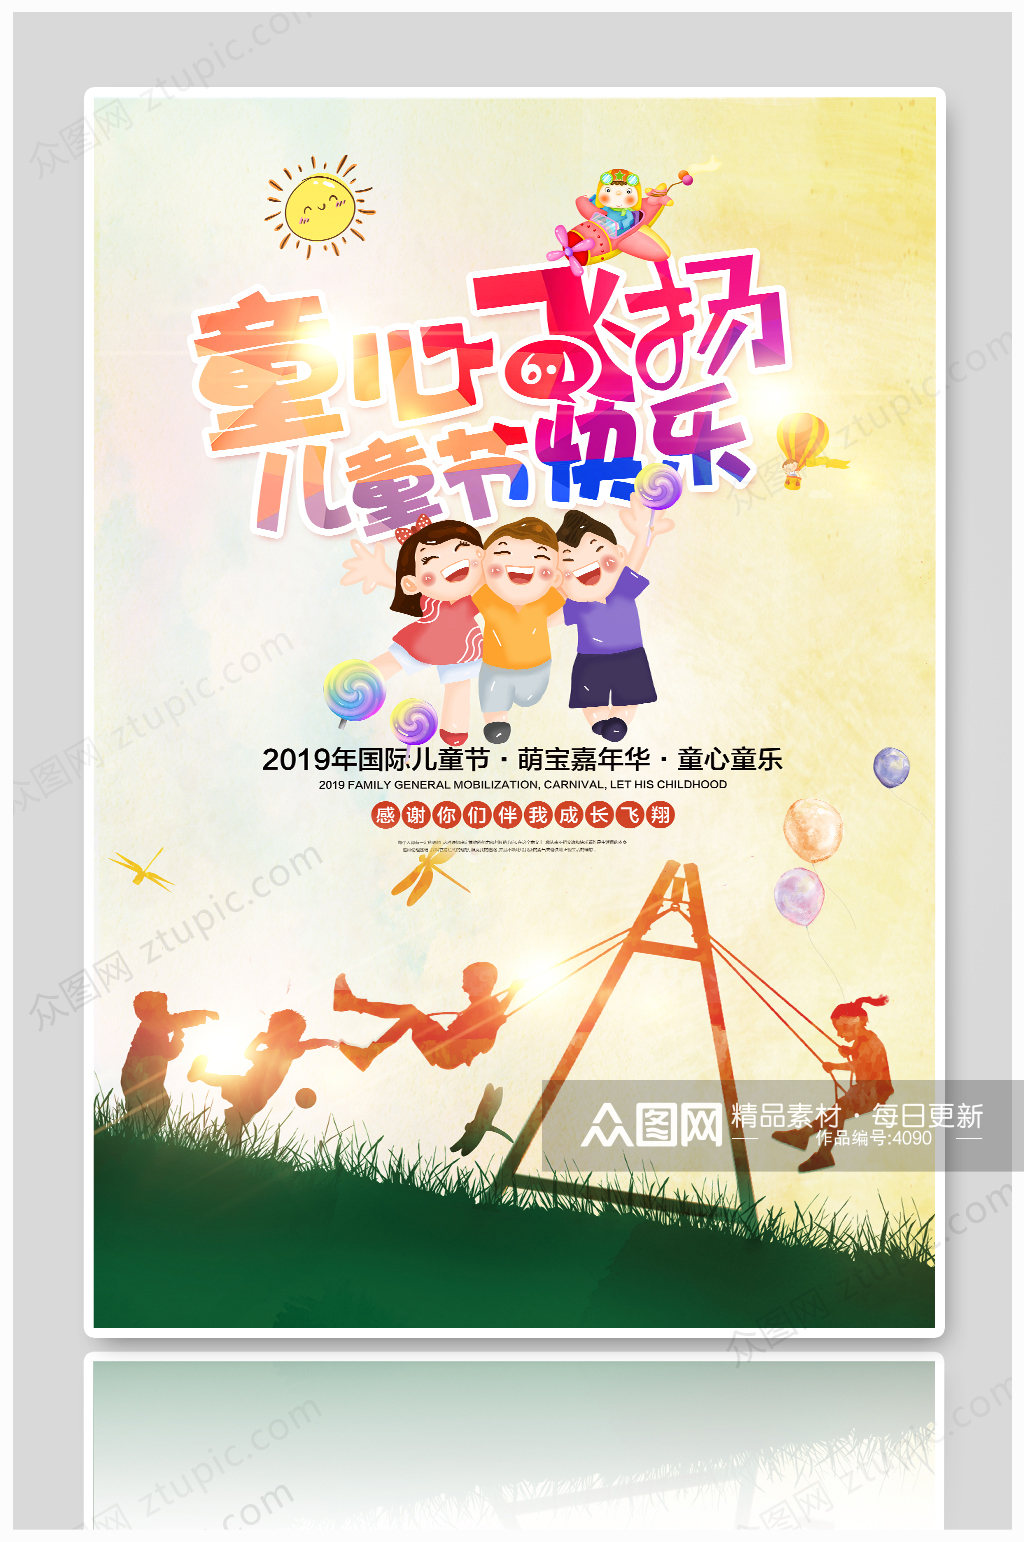 时尚卡通61儿童节促销活动海报设计素材